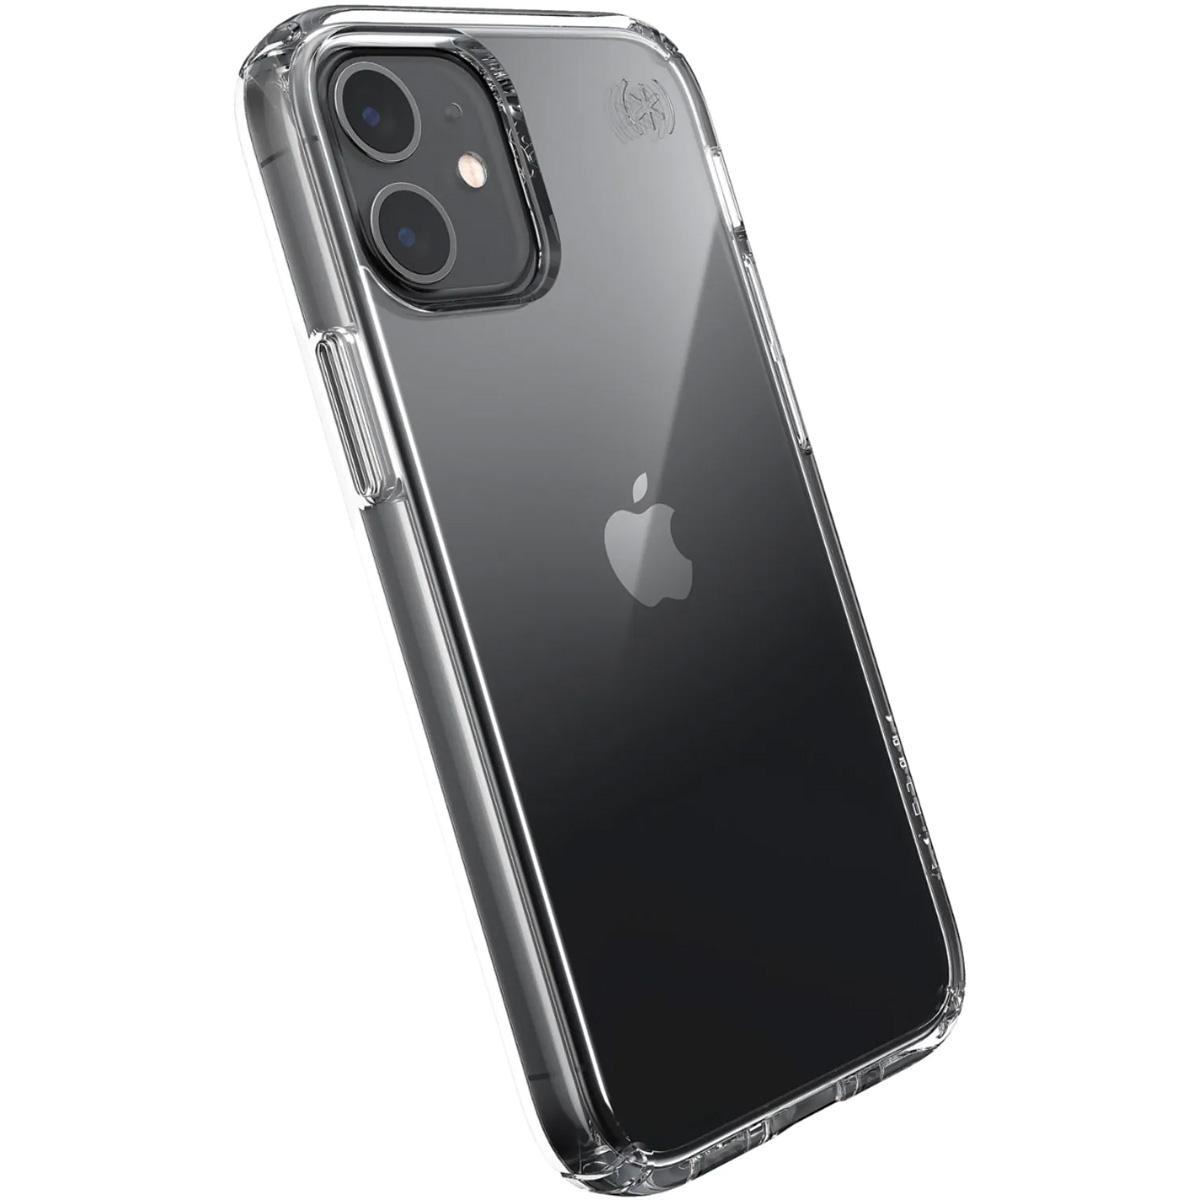 iPhone 12 Mini Smartphone Speck Presidio Cases for $4.99